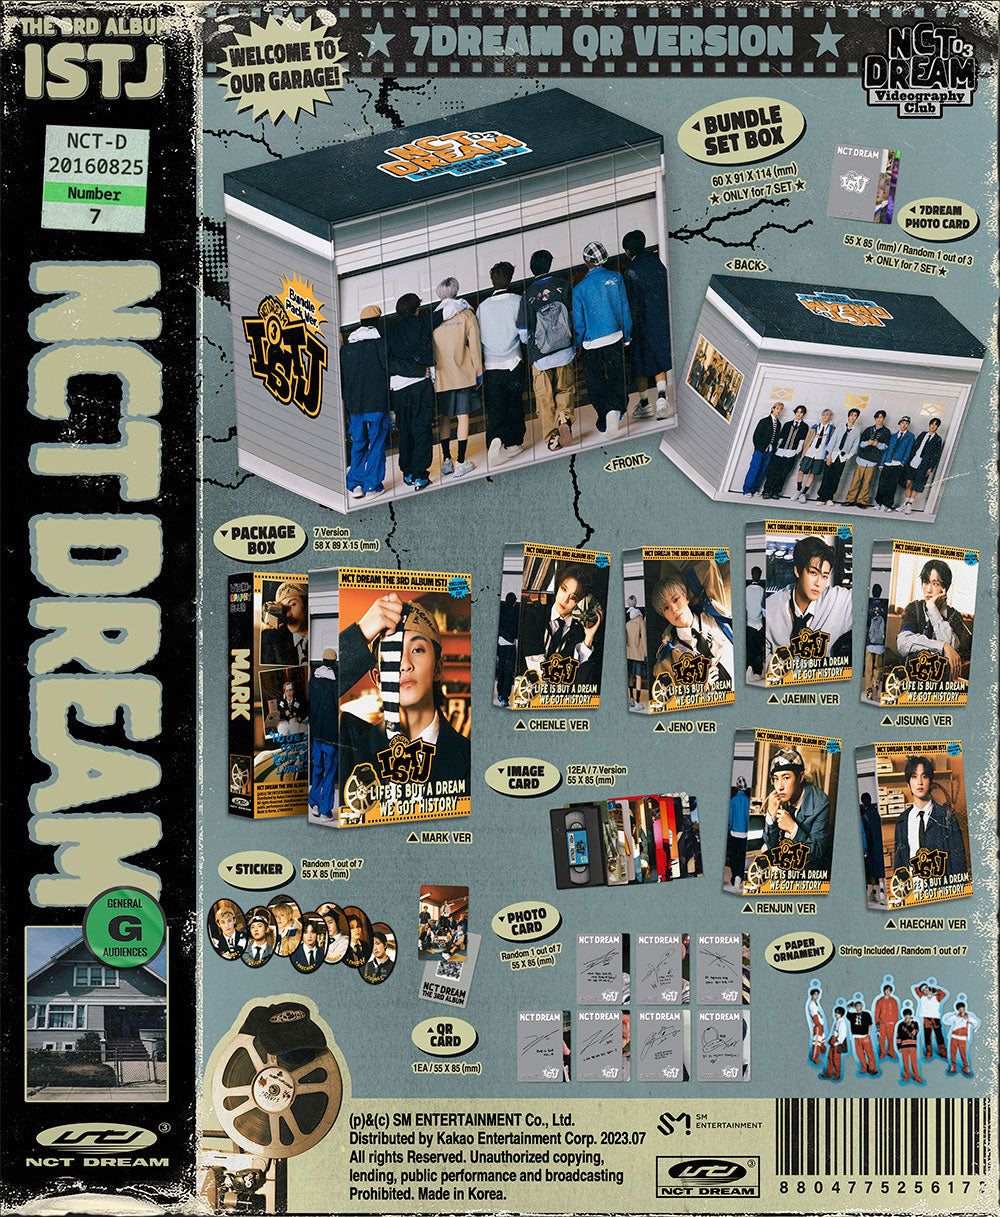 NCT DREAM - ISTJ (3rd Album) 7DREAM QR Ver. Smart Album